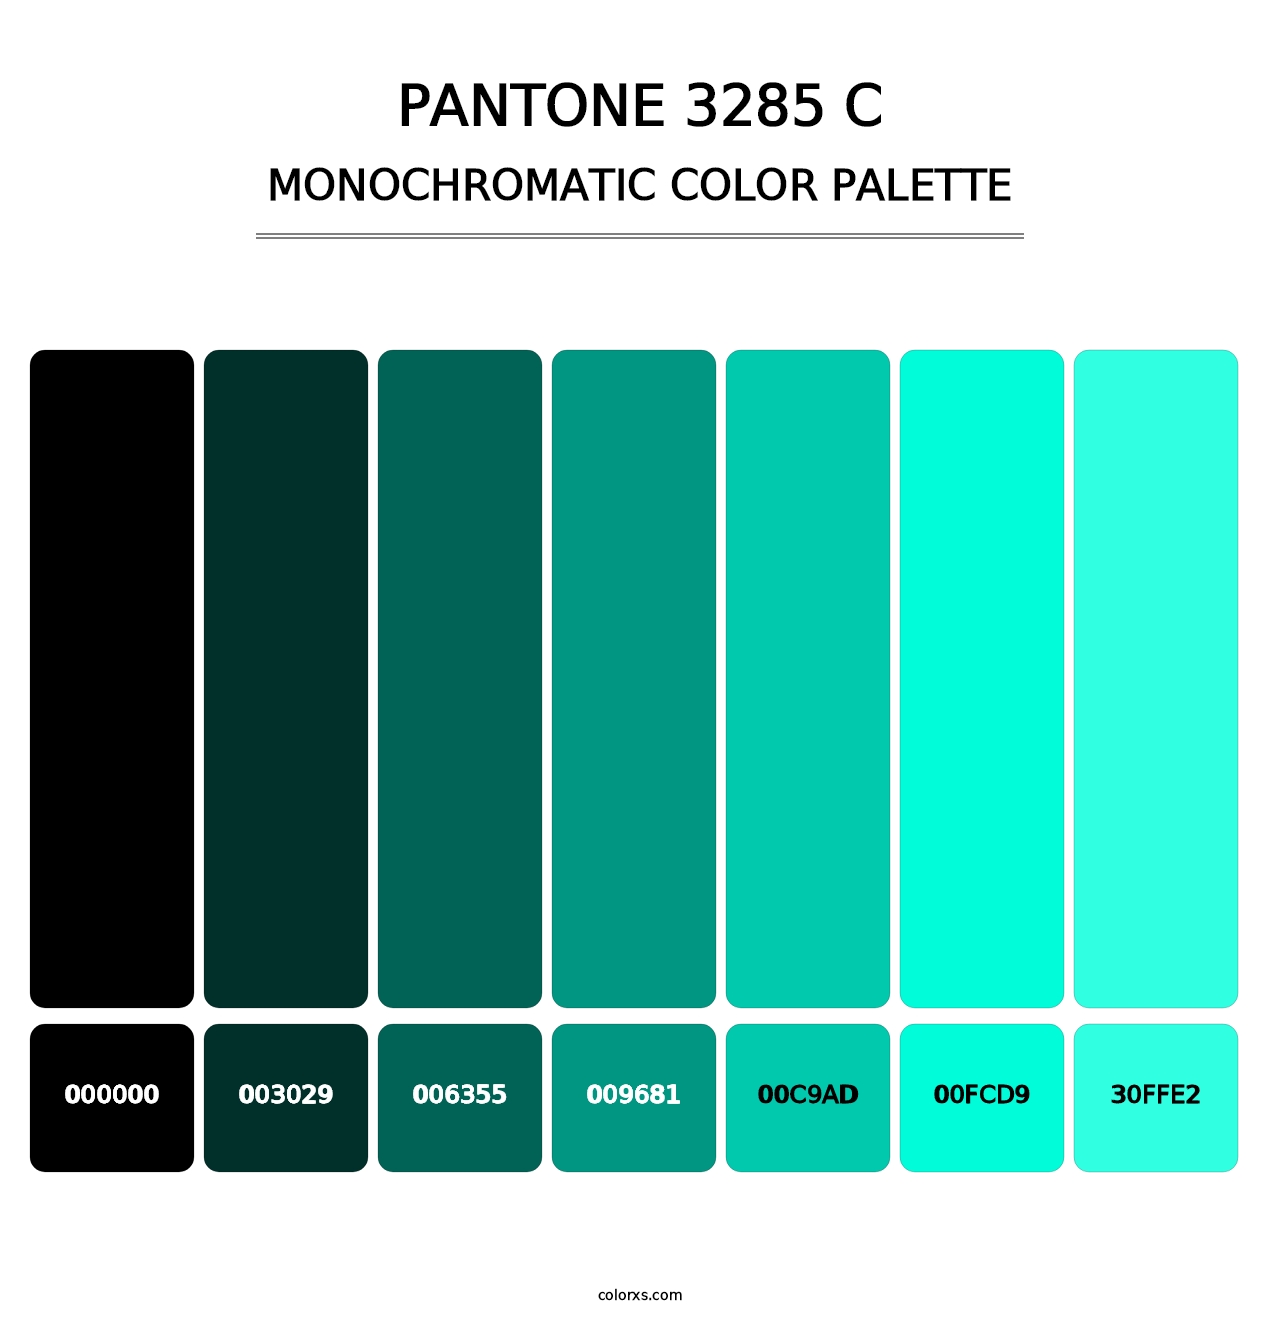 PANTONE 3285 C - Monochromatic Color Palette